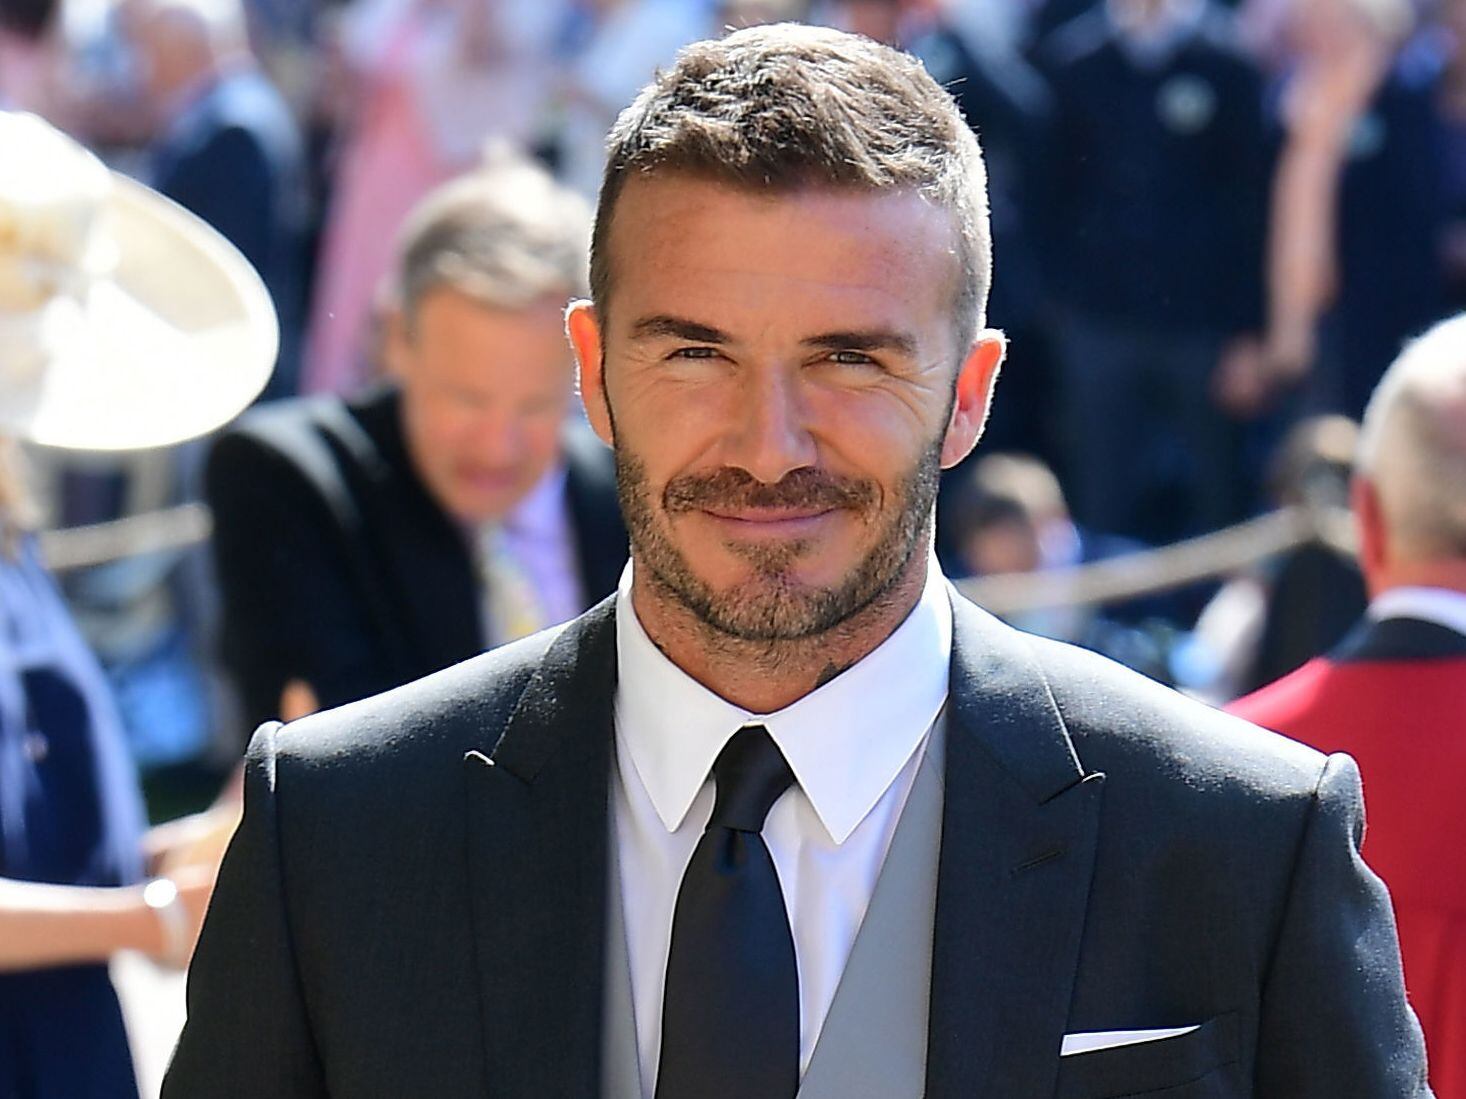 El exfutbolista David Beckham compartirá su vida en un documental de la plataforma Netflix, un contrato que ascendió a 16 millones de euros.